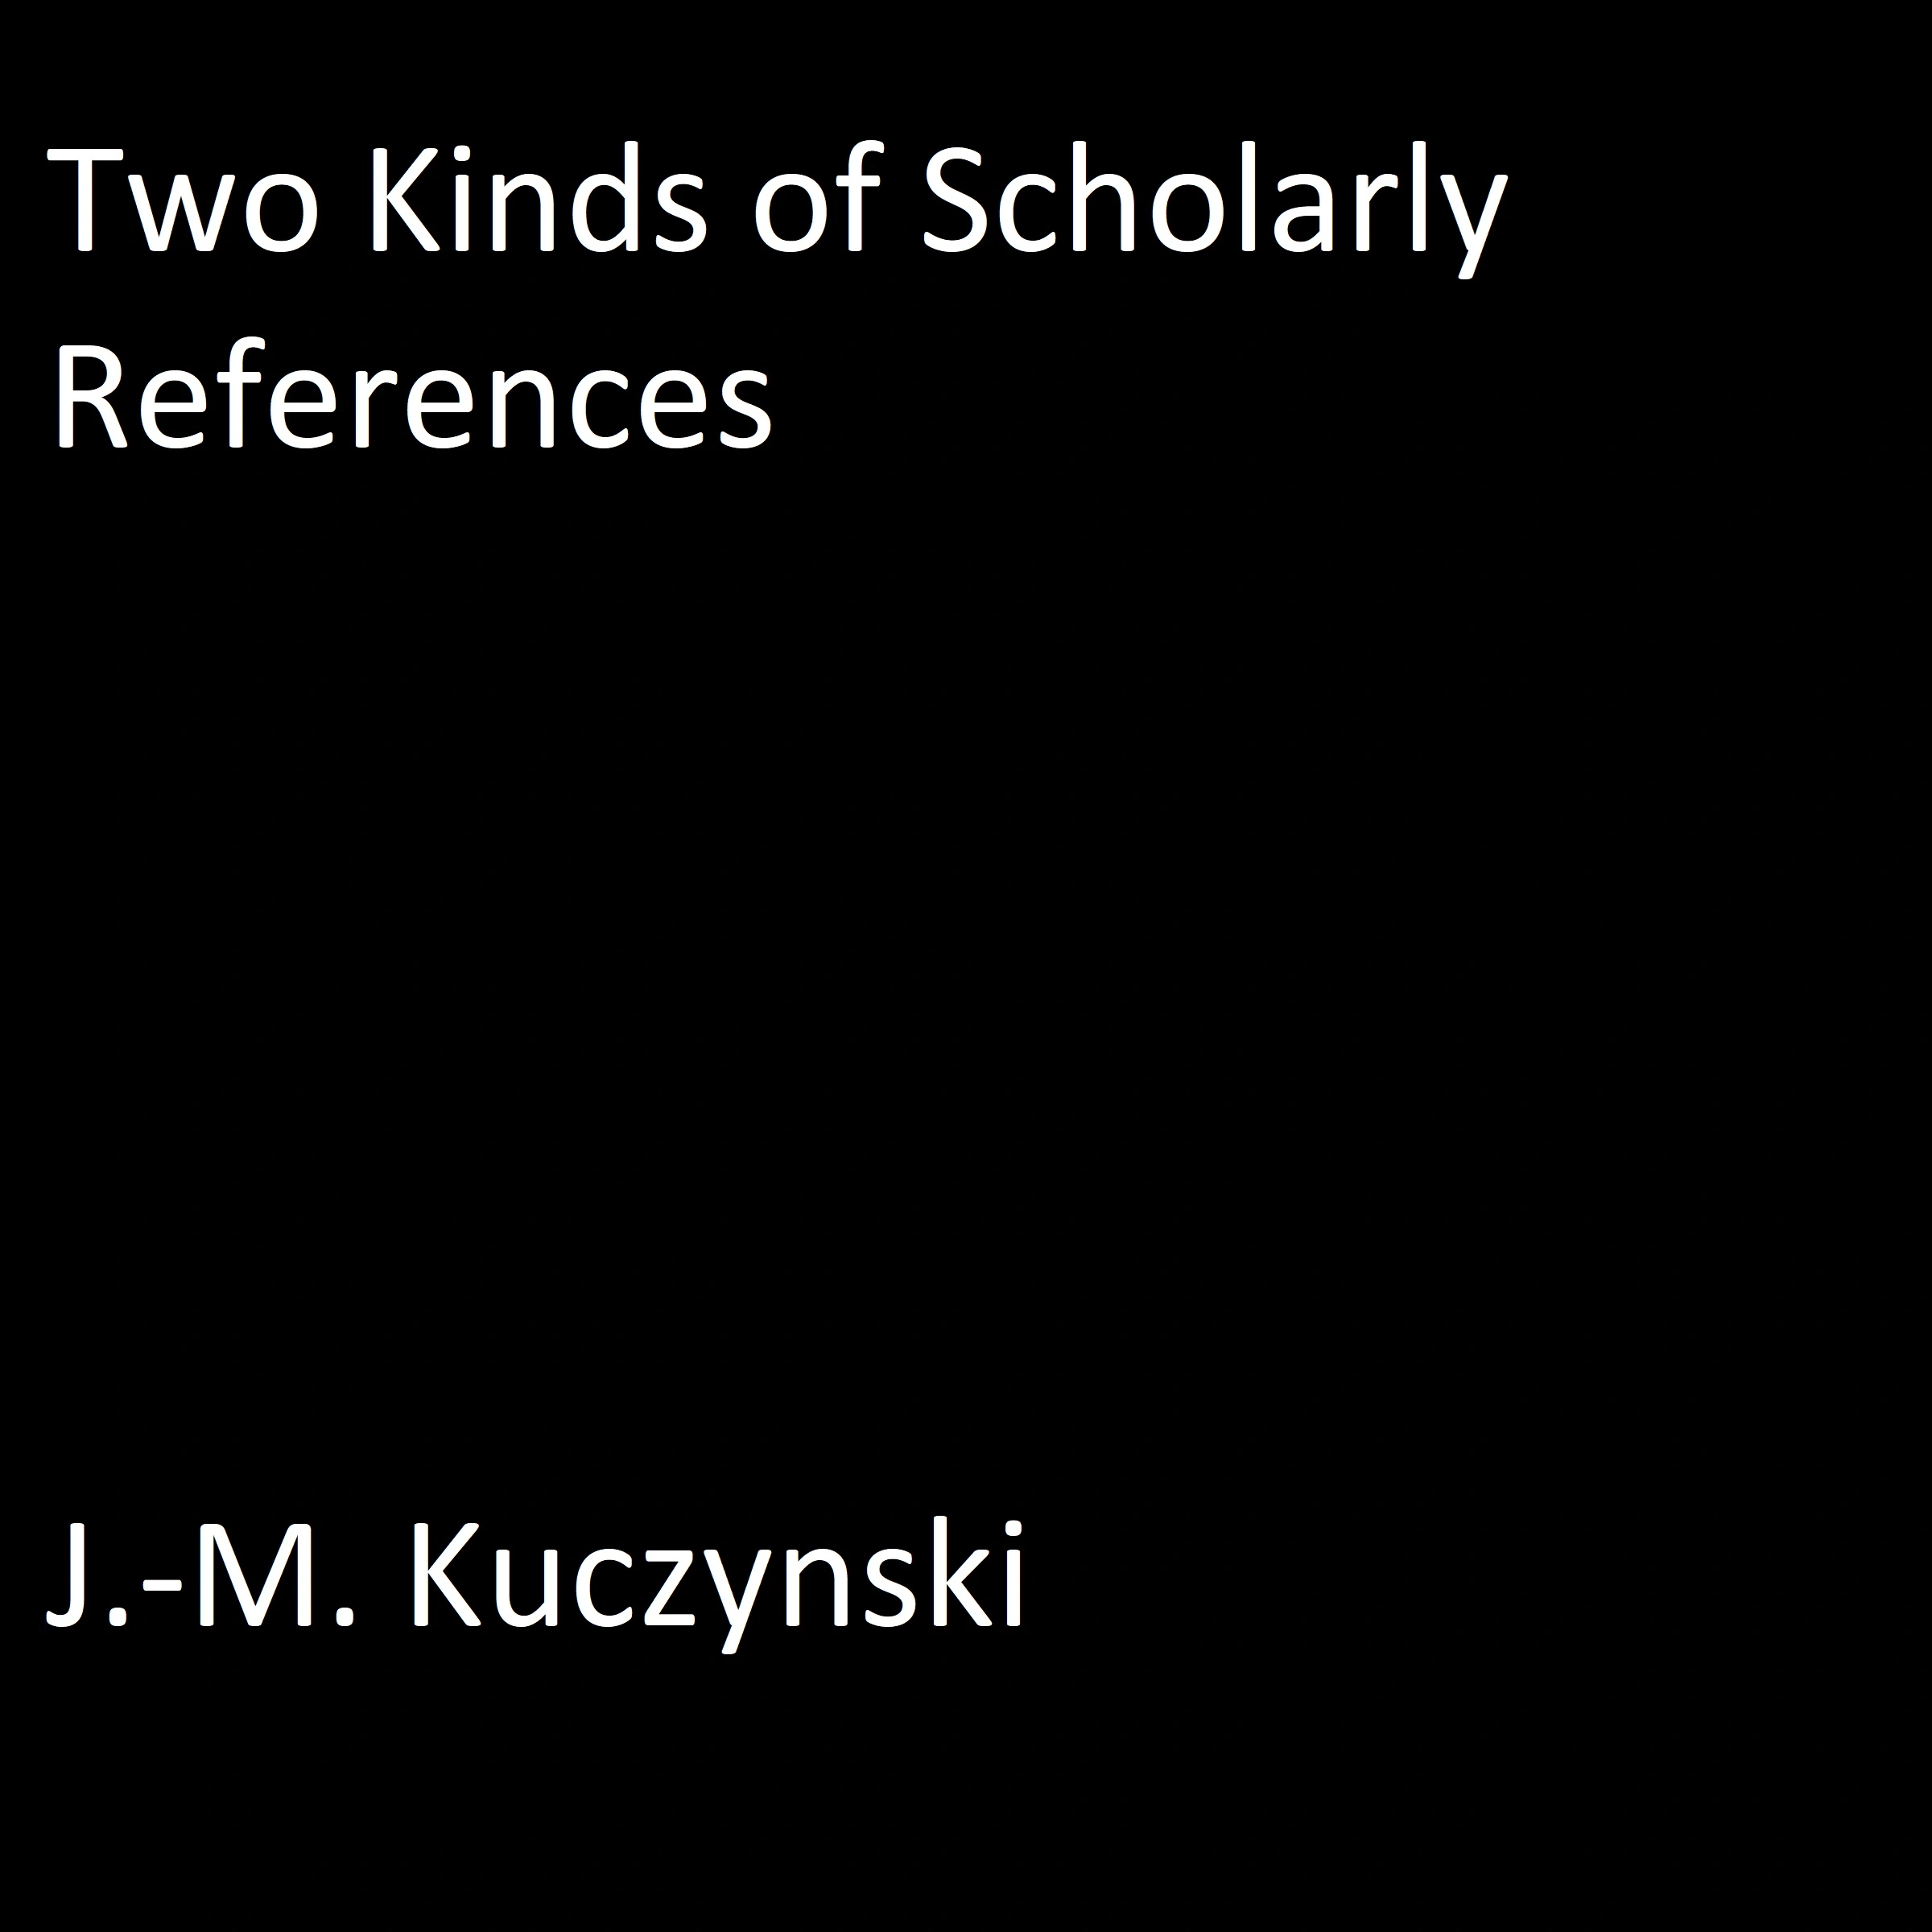 Two Kinds of Scholarly References Audiobook by J.-M. Kuczynski